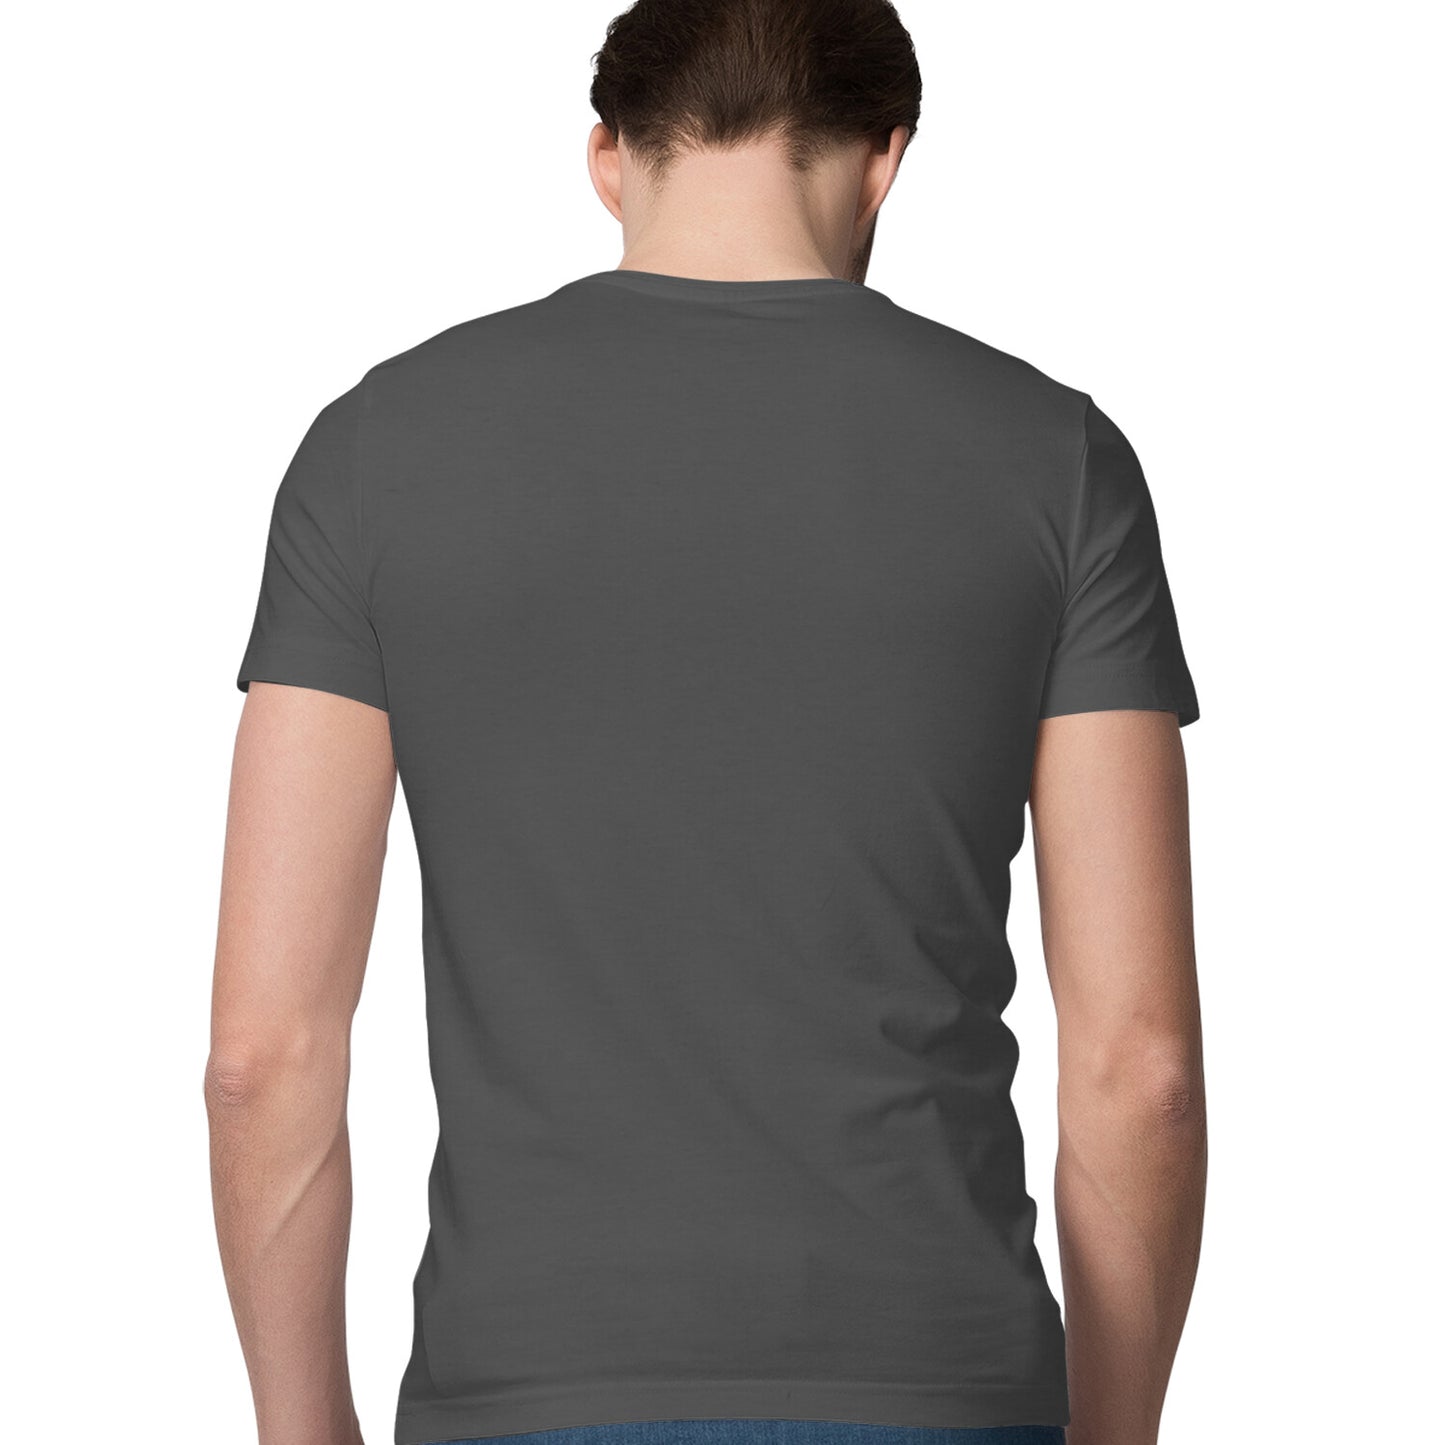 New York - Elegant Men's T-shirt - Men